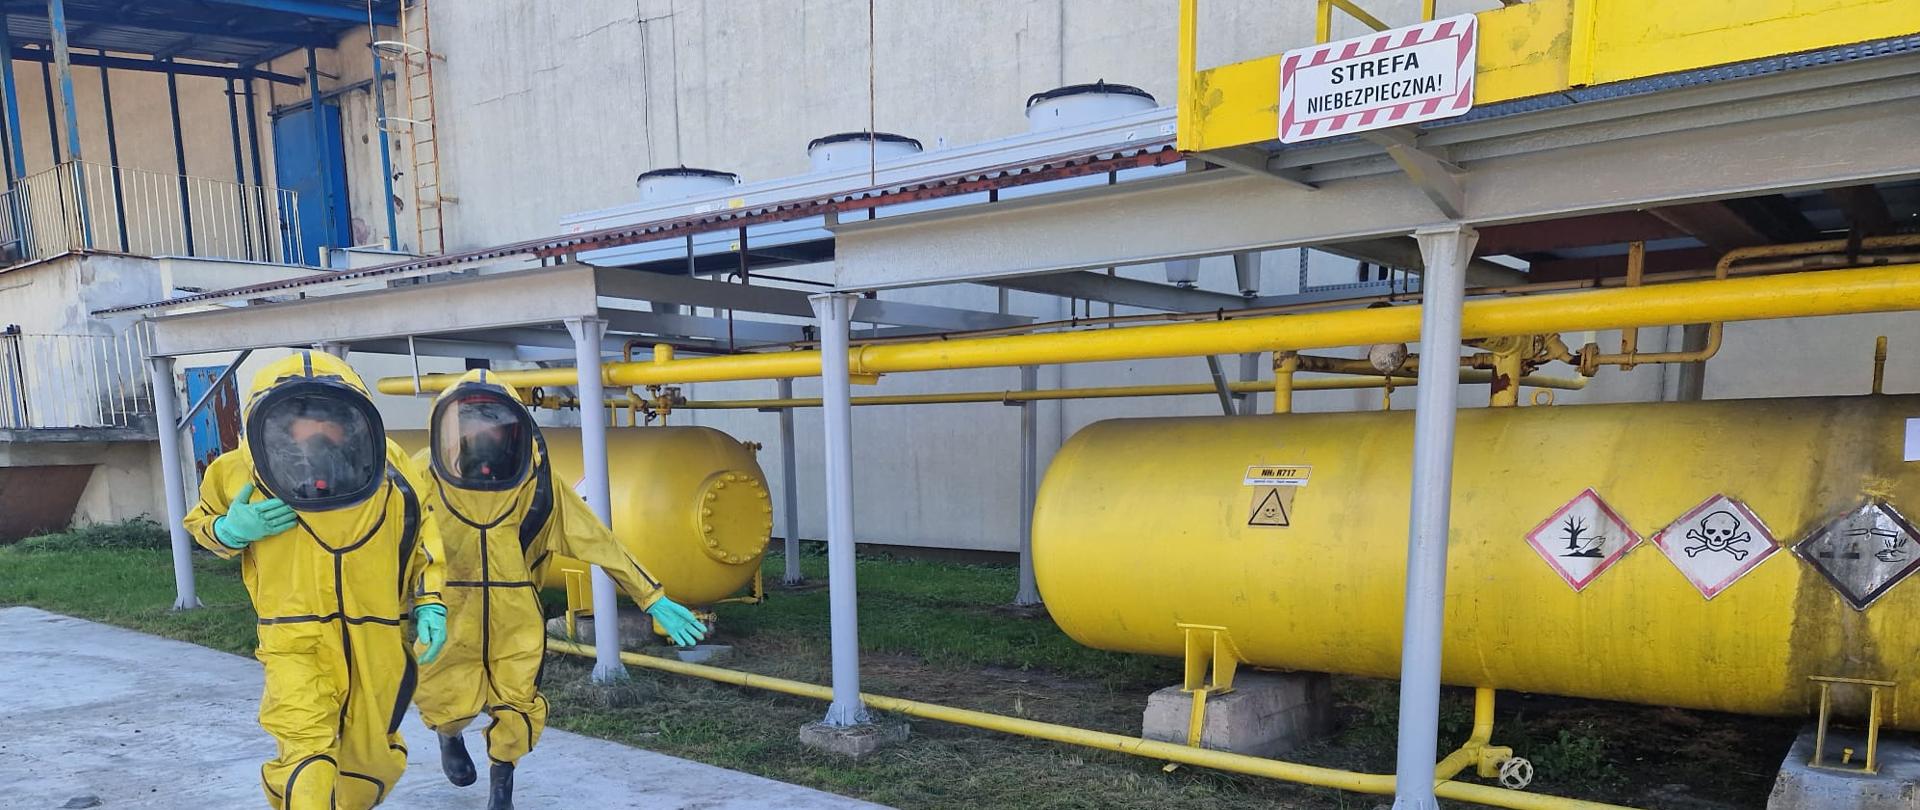 Na zdjęciu duże zbiorniki w kształcie walca koloru żółtego, na nich widoczne oznakowania informujące o różnego rodzaju zagrożeniach. Przy nich dwaj strażacy w ubraniach ochrony przeciwchemicznej.